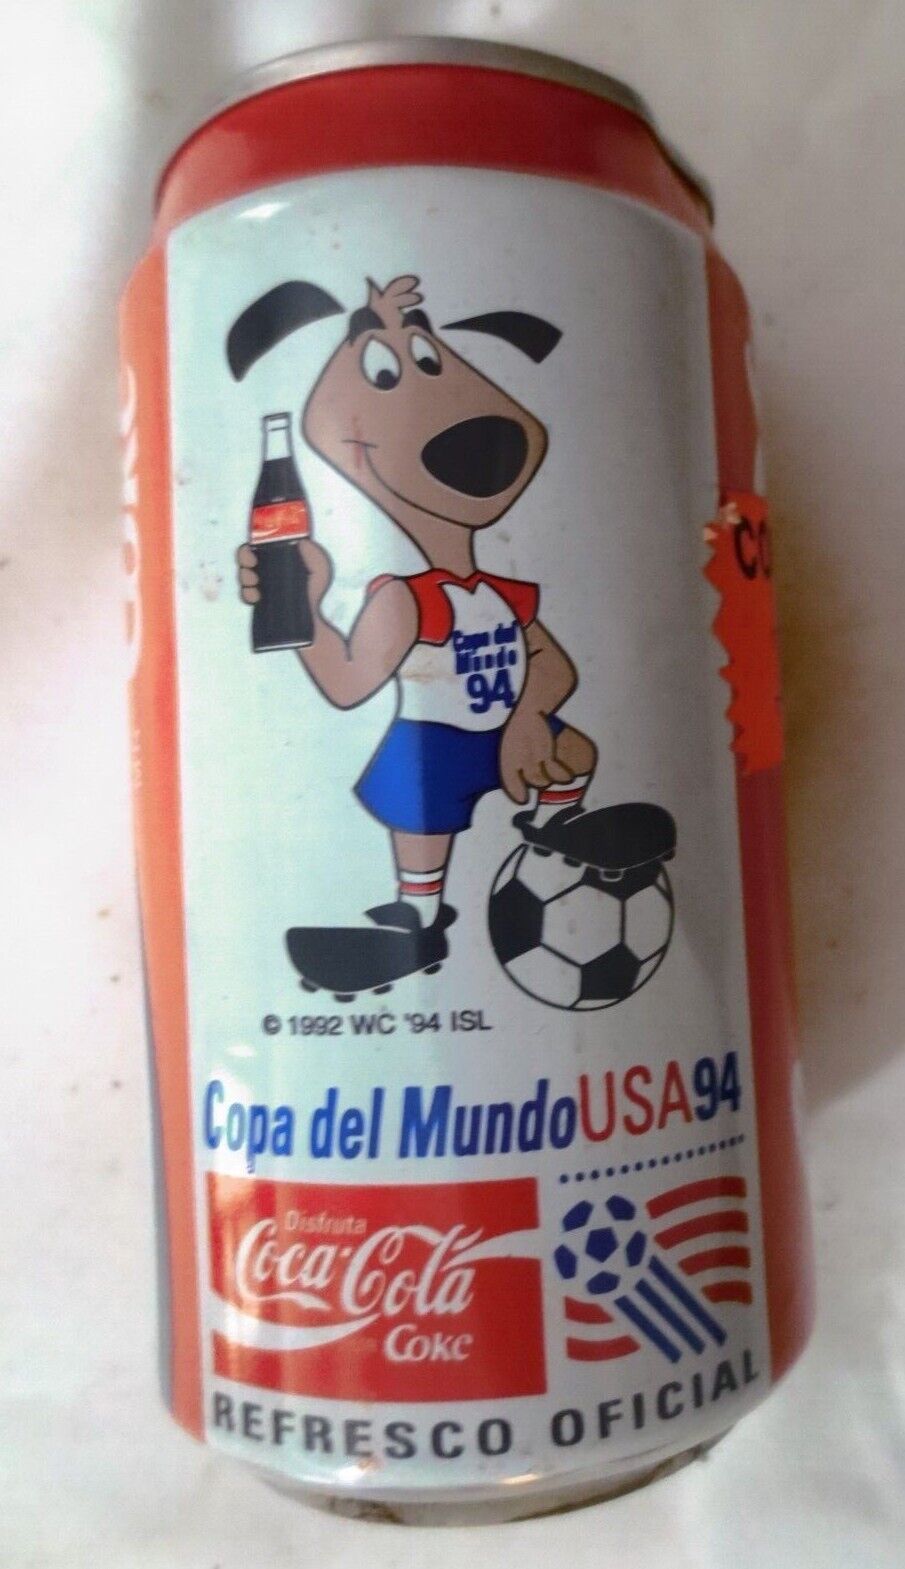 Coca Cola Coke Copa del Mundo USA94 Refresco Official Tab on Empty